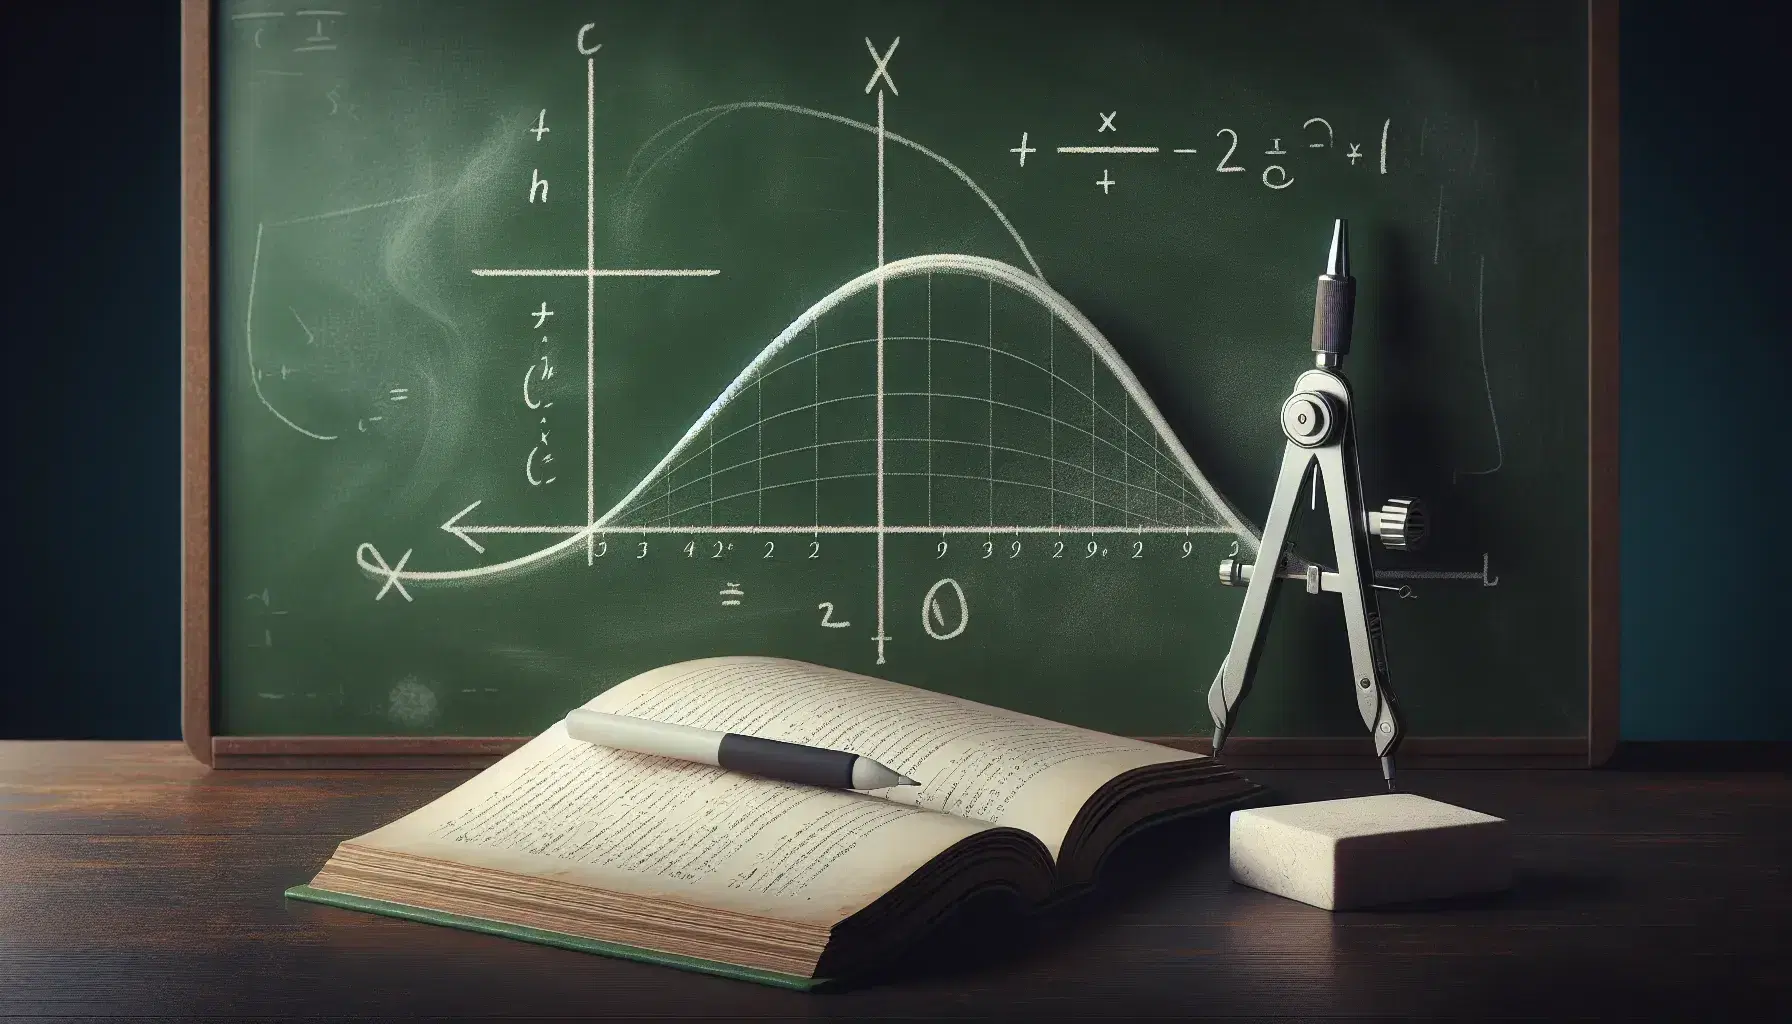 Lavagna scolastica verde con curva parabolica bianca, compasso metallico, gomma e libro di matematica aperto su tavolo in legno con mela rossa.